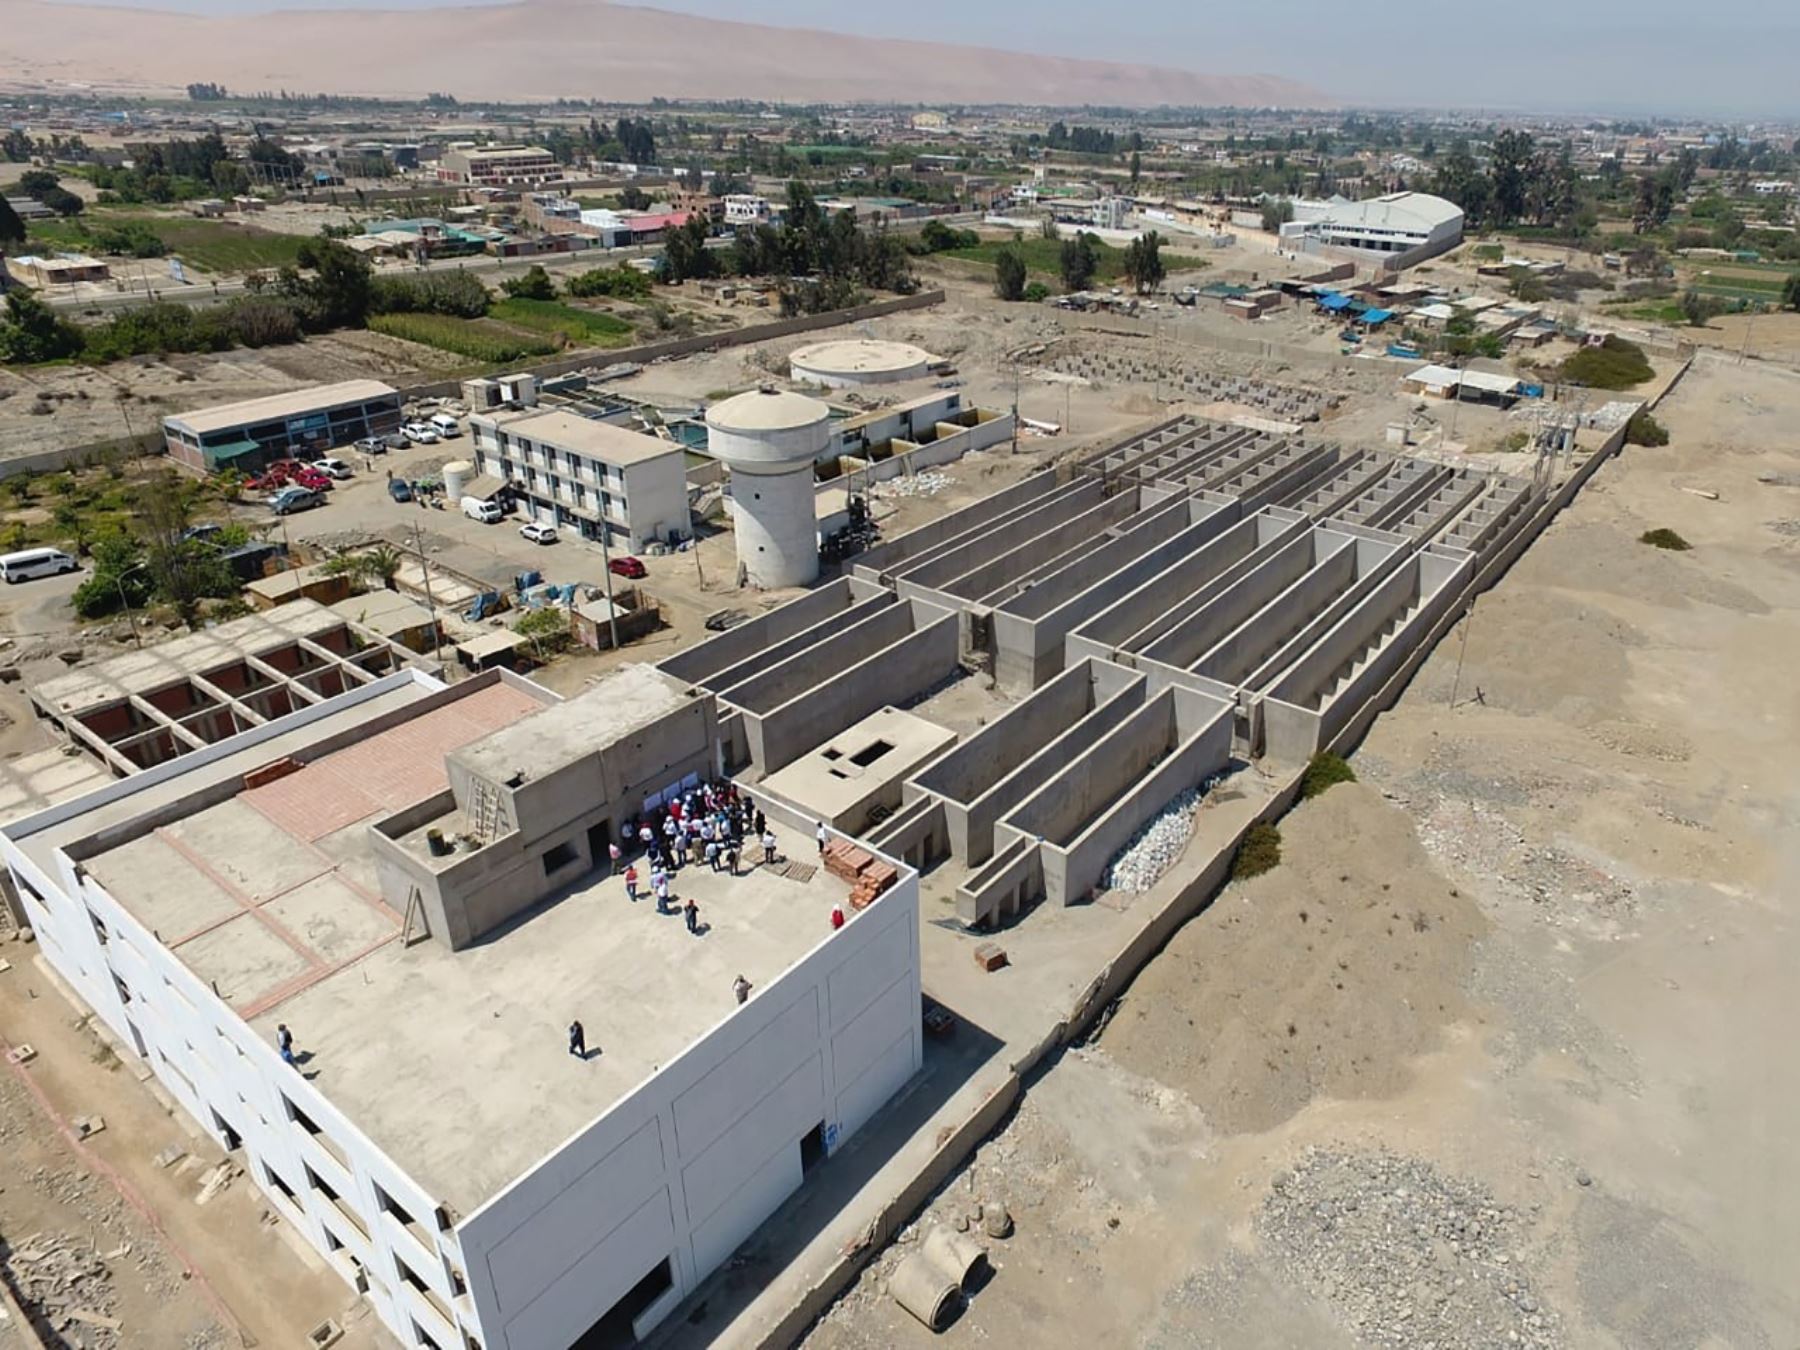 En los primeros meses de 2021 se reiniciarán los trabajos de construcción de la planta de tratamiento de agua potable en Tacna, anunció el ministro de Vivienda, Carlos Lozada.